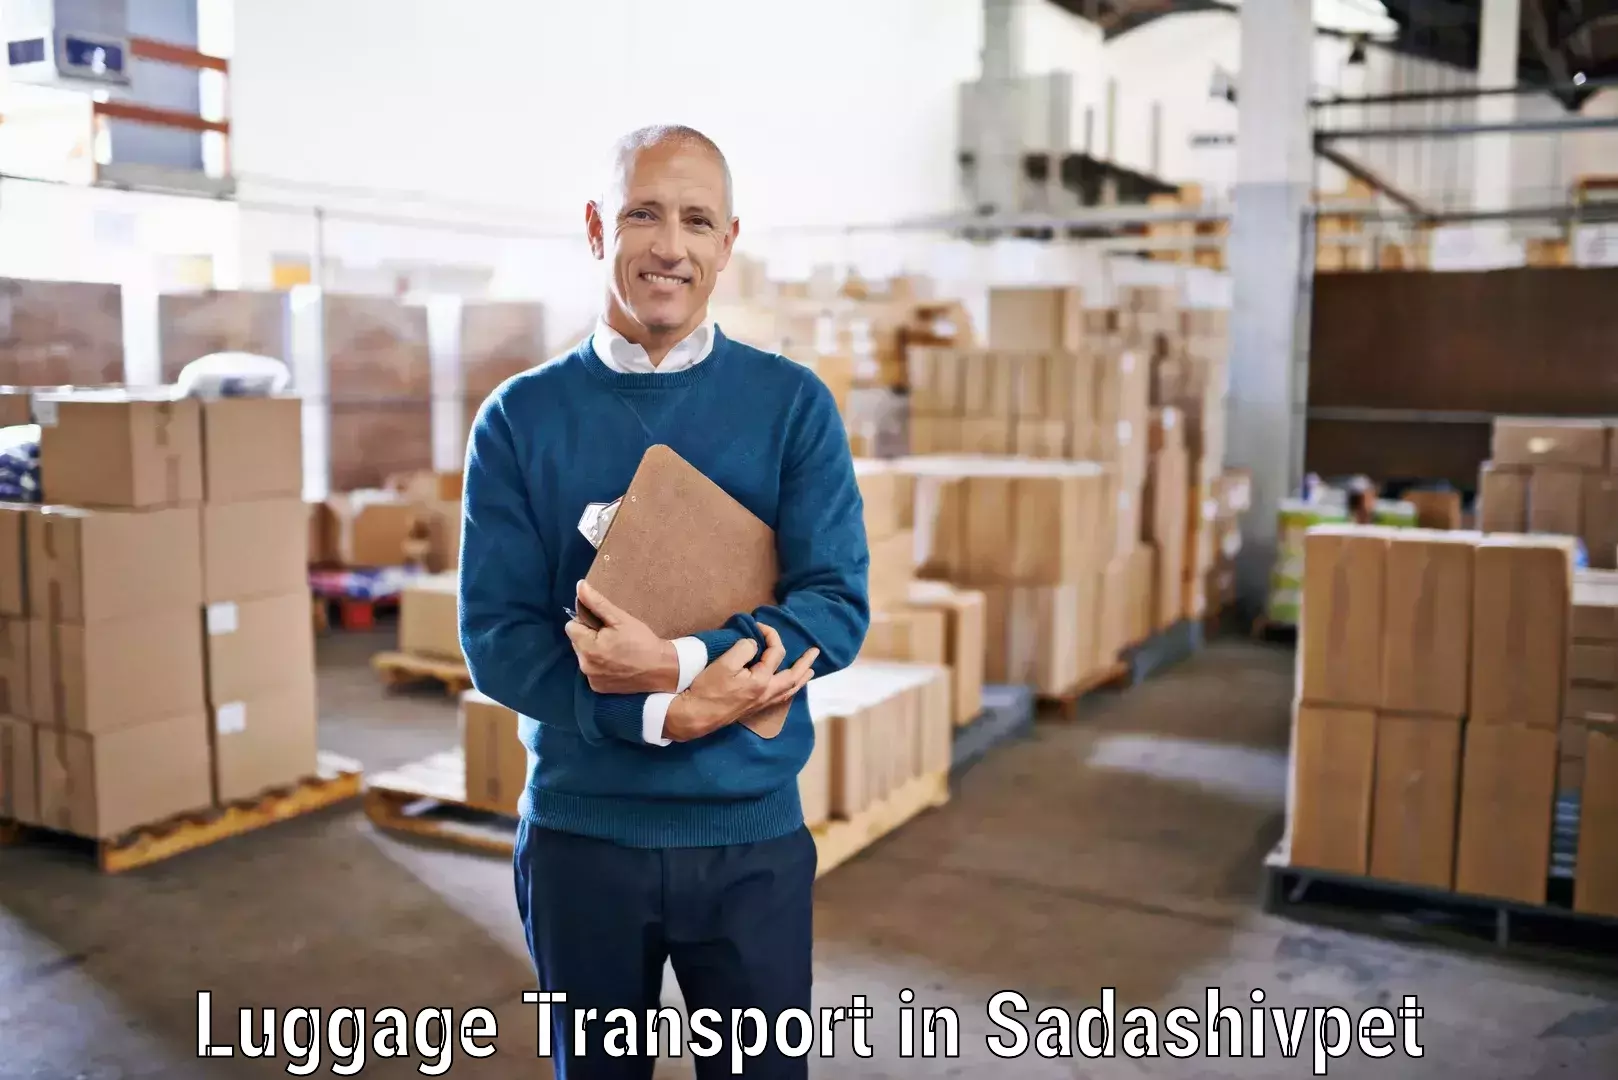 Luggage transport rates in Sadashivpet